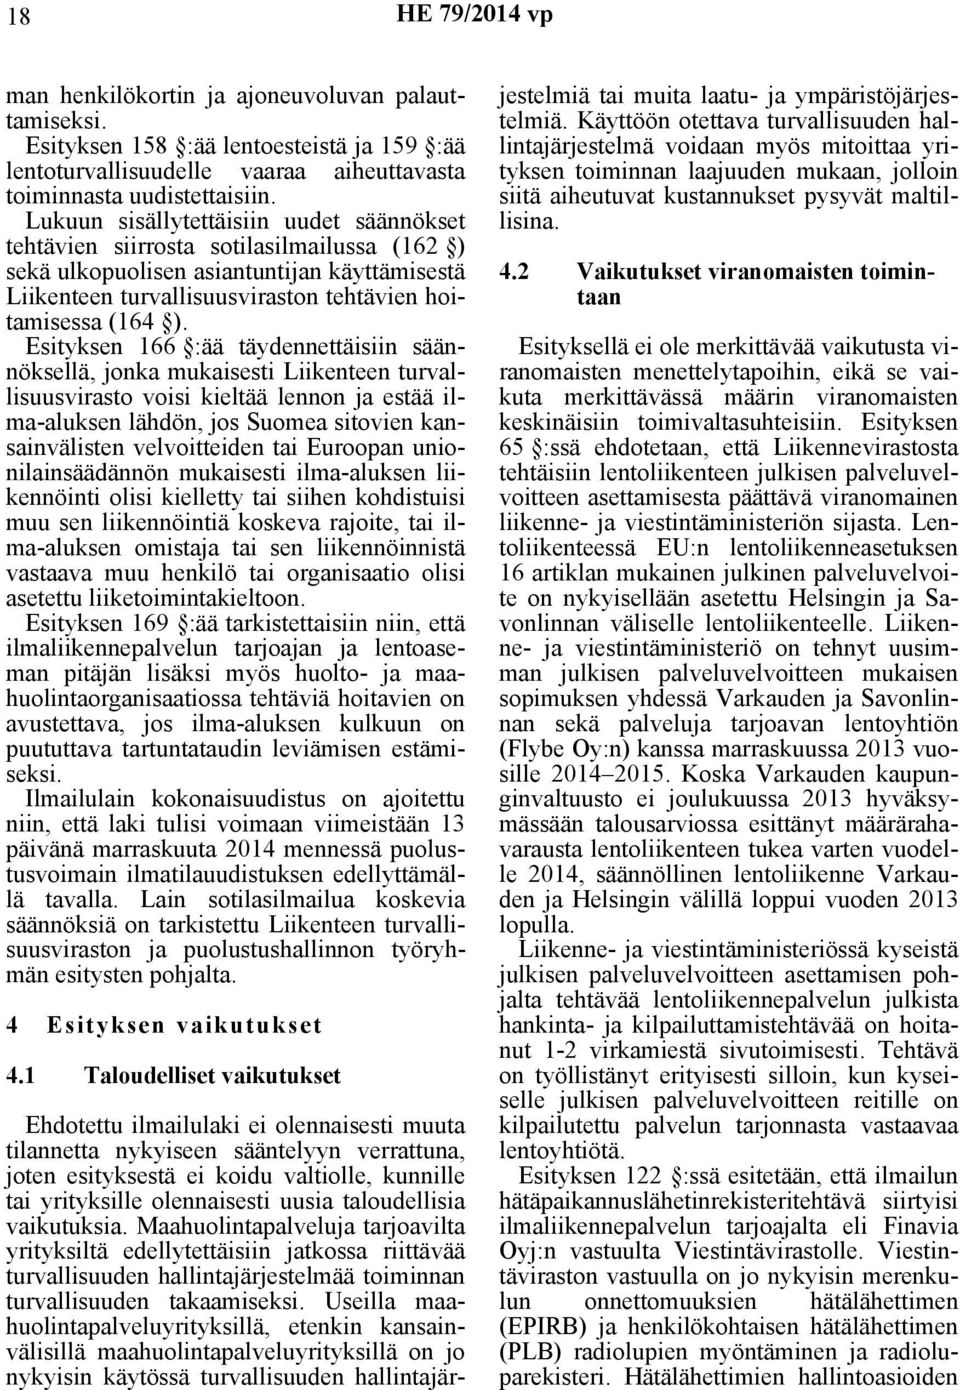 Esityksen 166 :ää täydennettäisiin säännöksellä, jonka mukaisesti Liikenteen turvallisuusvirasto voisi kieltää lennon ja estää ilma-aluksen lähdön, jos Suomea sitovien kansainvälisten velvoitteiden